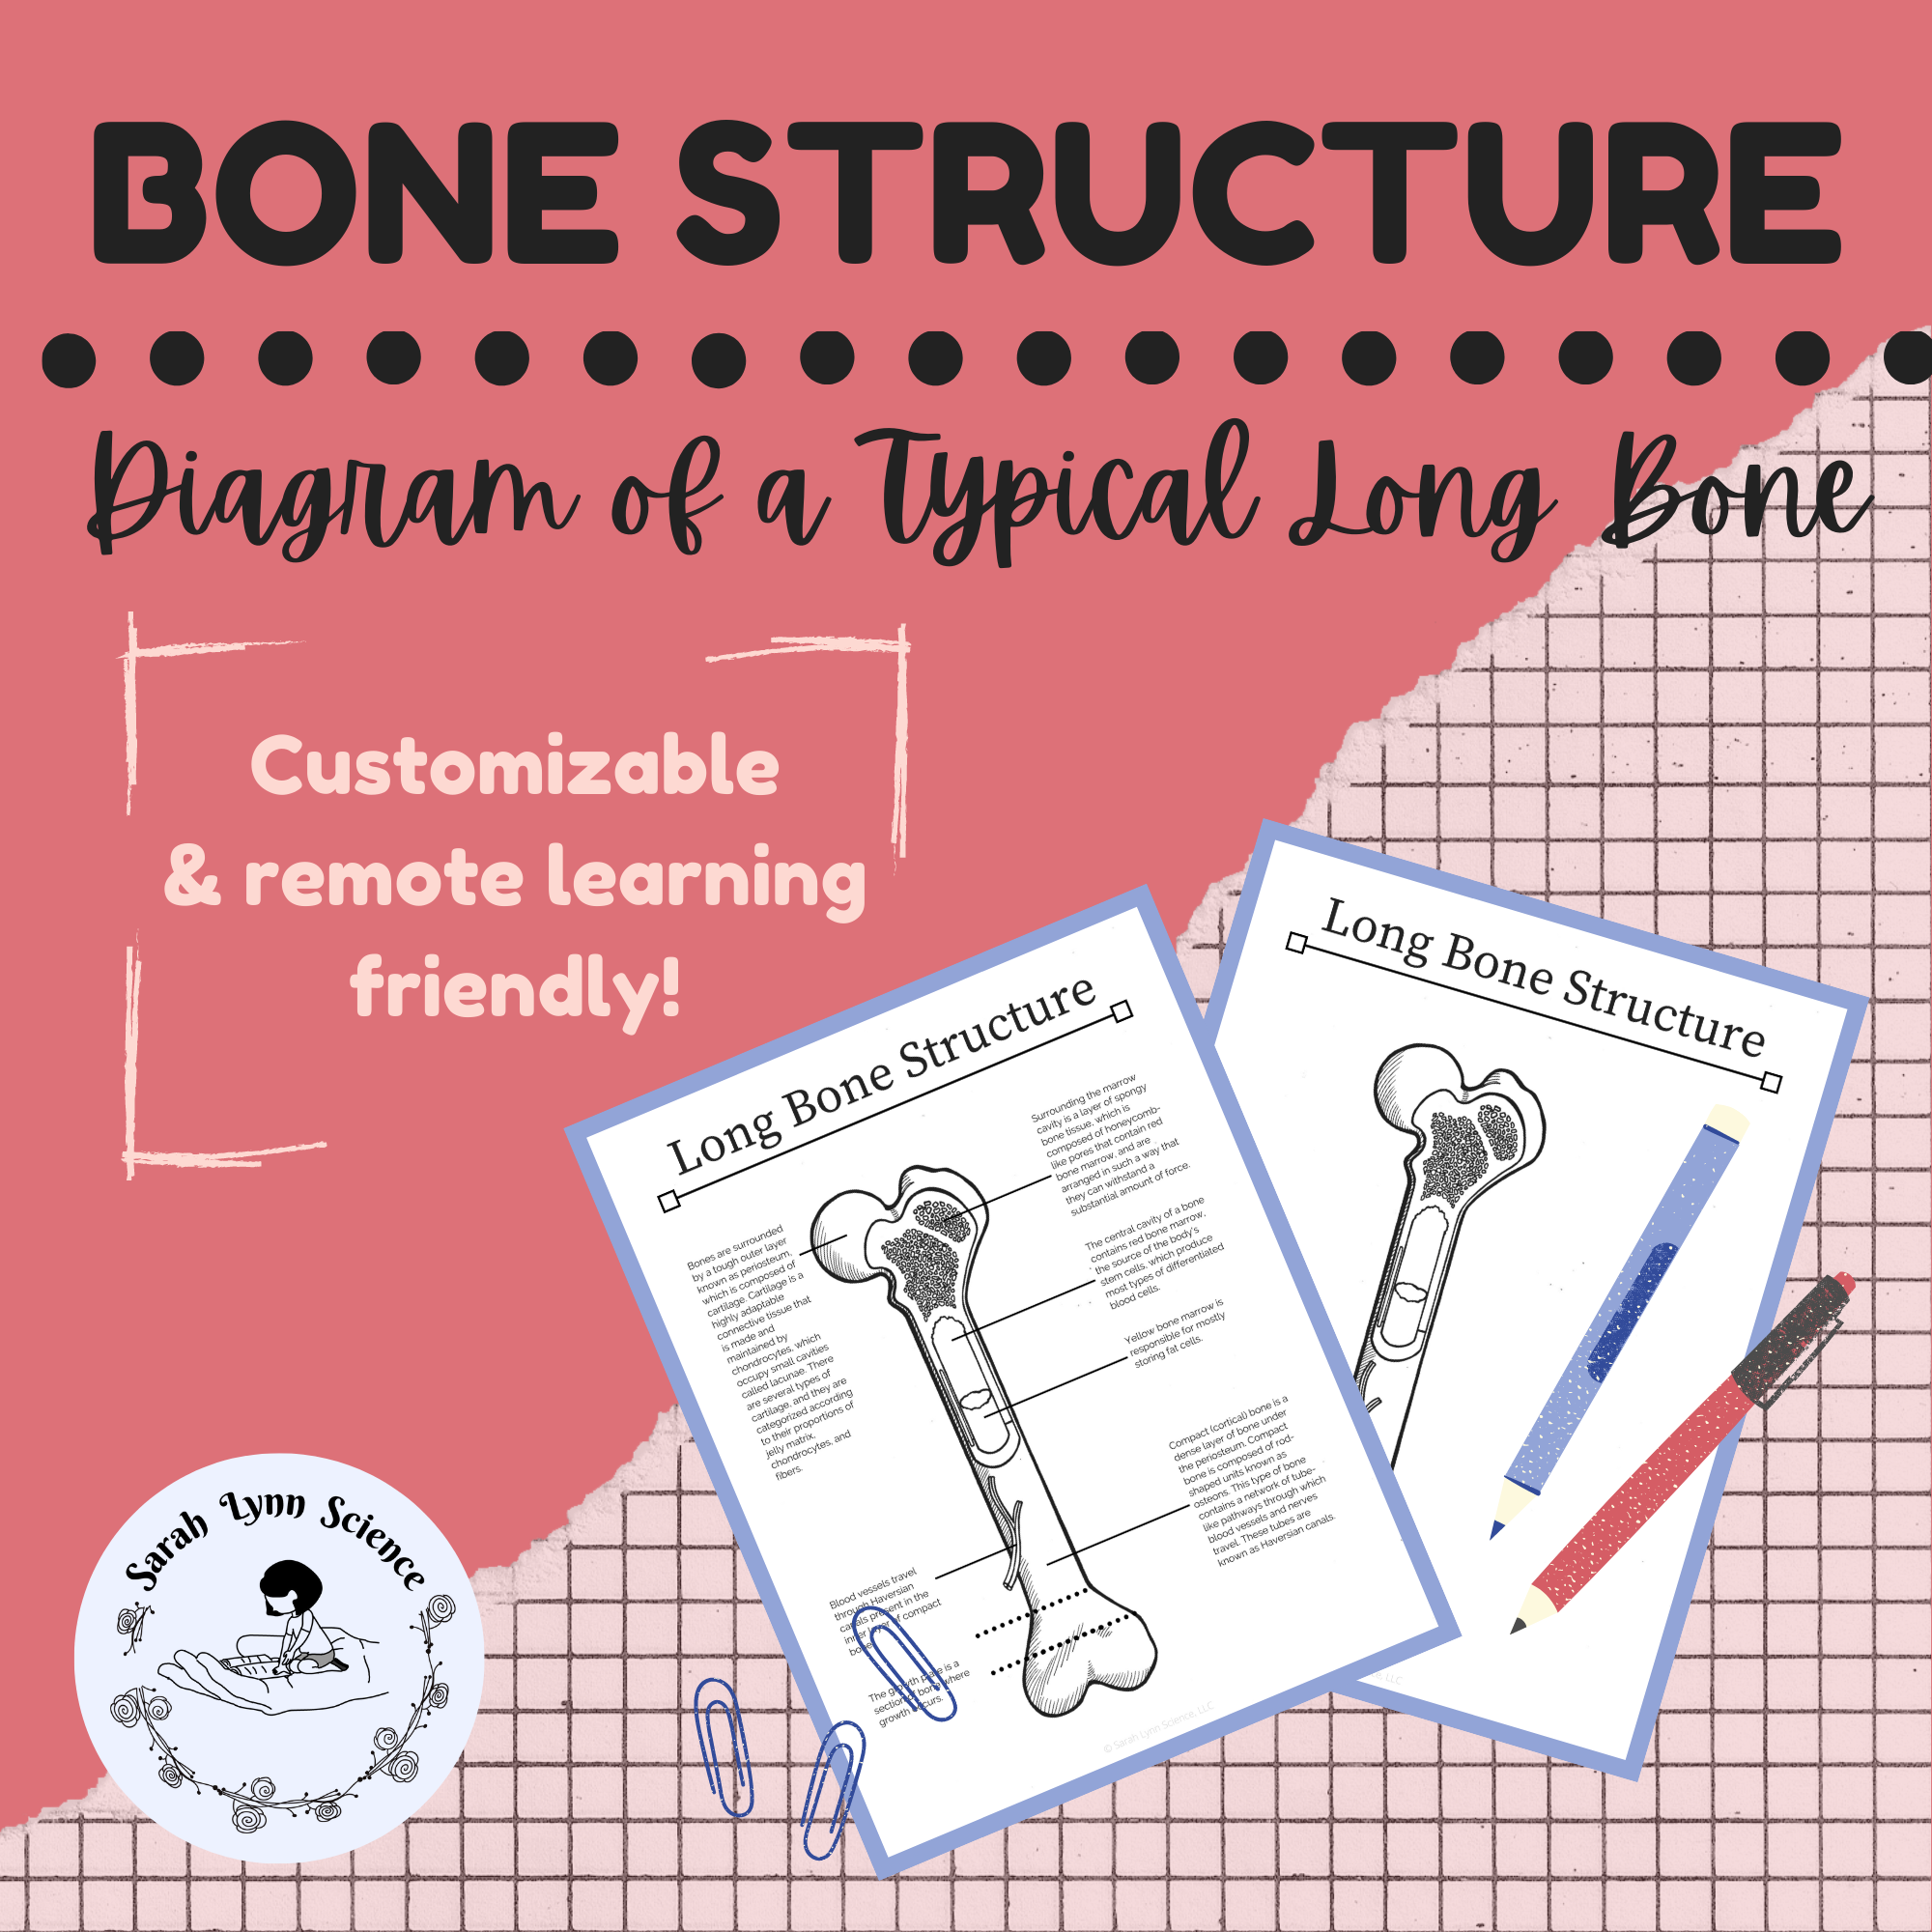 Long Bone Structure Diagram